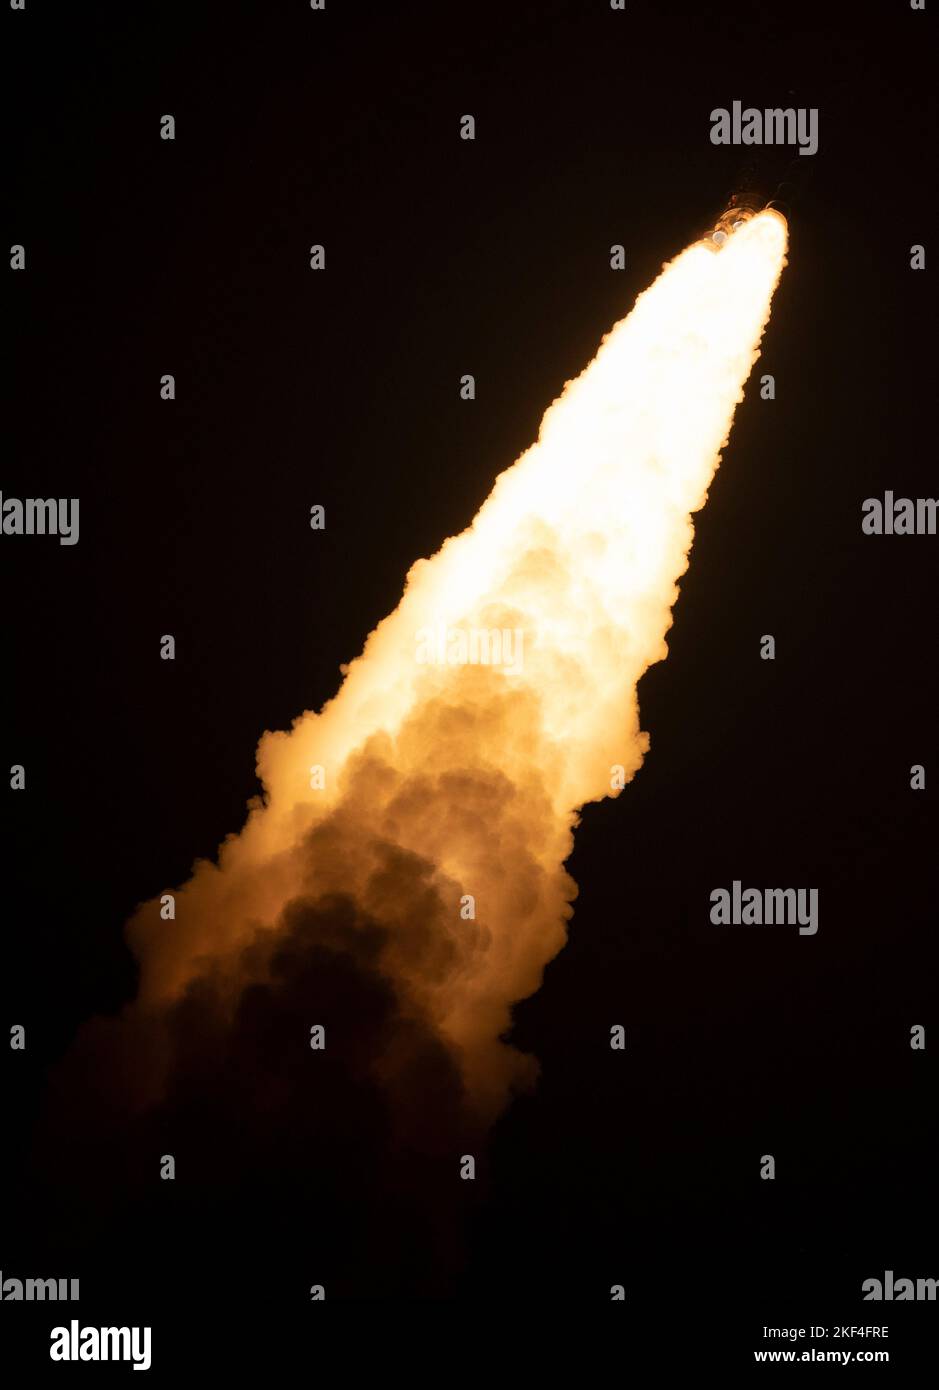 Centro Espacial Kennedy, Estados Unidos de América. 16 de noviembre de 2022. Los cohetes masivos del cohete del Sistema de Lanzamiento Espacial Artemis I de la NASA elevan la nave espacial Orion hacia el cielo de la mañana temprano desde el Complejo de Lanzamiento 39B llevando la nave espacial Orion desde el Centro Espacial Kennedy, el 16 de noviembre de 2022, en Cabo Cañaveral, Florida. Después de varios intentos fallidos, la prueba de vuelo sin tripulación se levantó en la primera prueba de la misión de exploración del espacio profundo. Crédito: Joel Kowsky/NASA/Alamy Live News Foto de stock